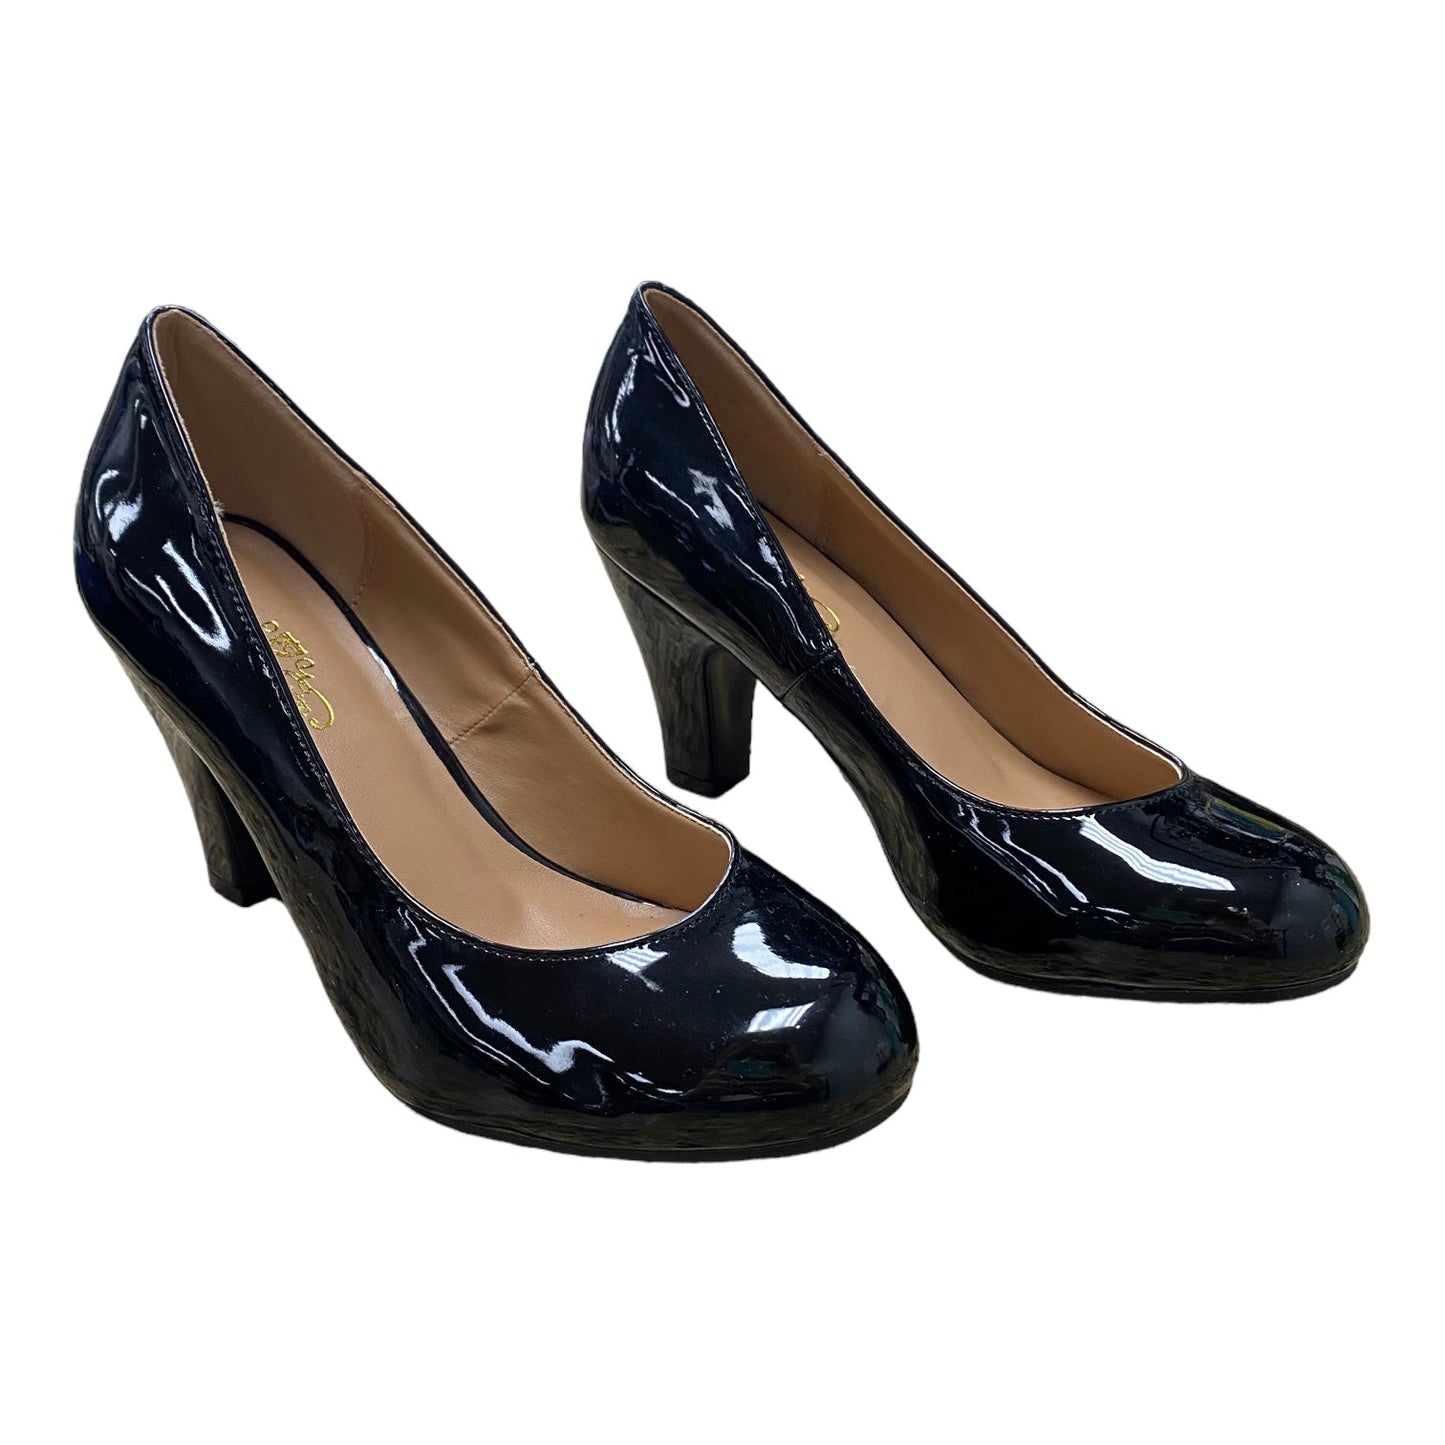 Black Shoes Heels Stiletto Journee, Size 6